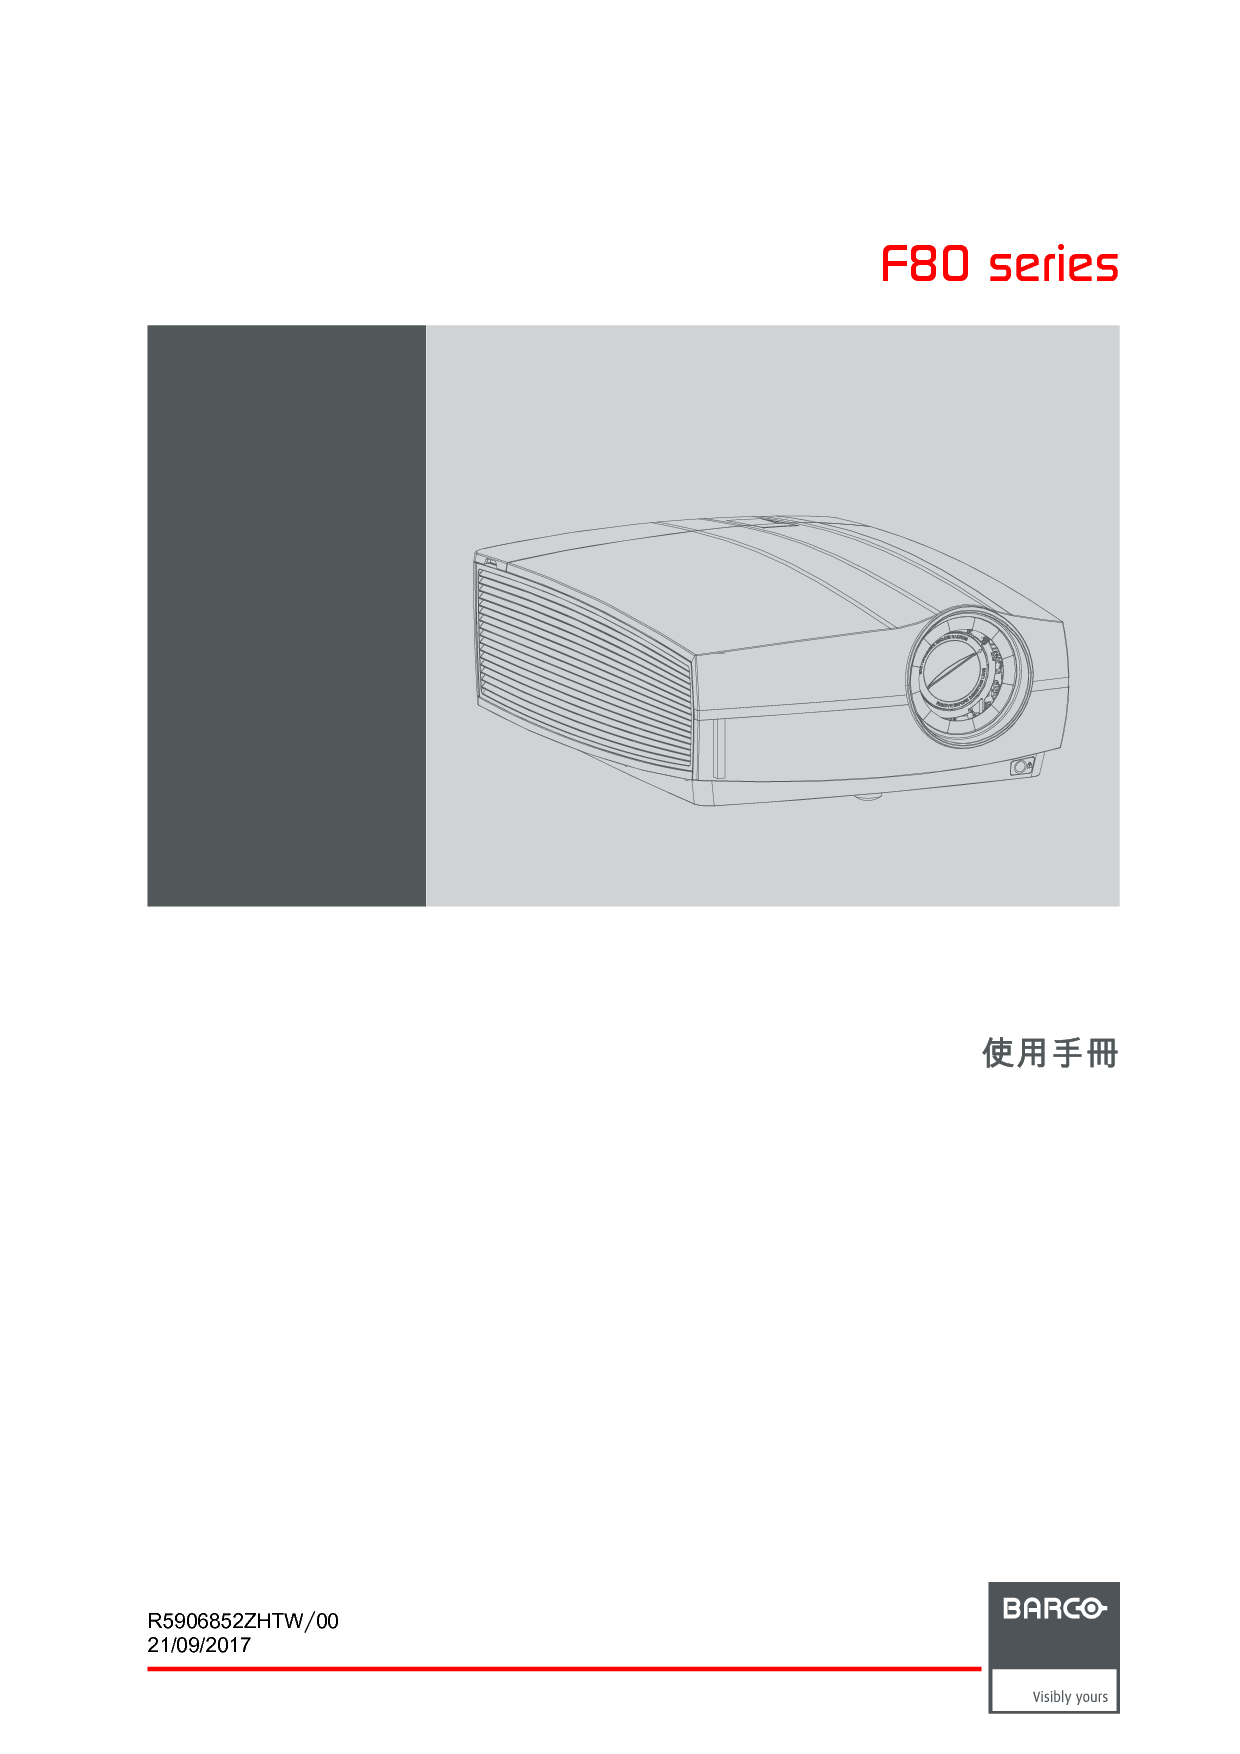 巴可 Barco F80-4K7, F80-Q9 繁体 用户手册 封面